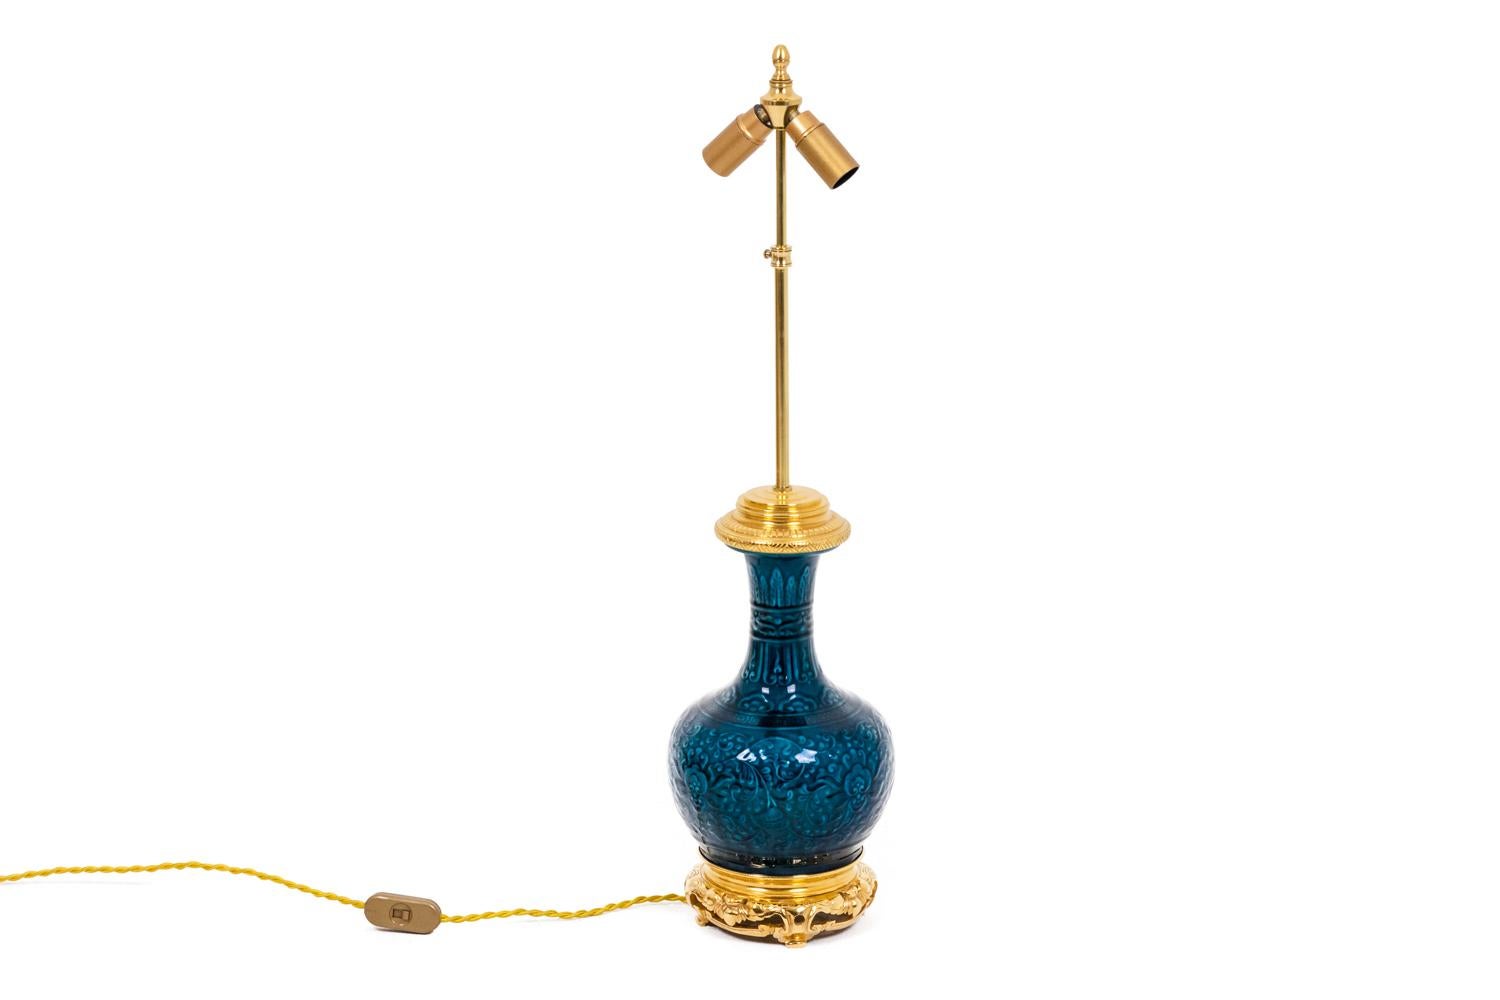 Théodore Deck, dans le style de. 

Lampe en porcelaine de Sèvres, couleur bleue. Signé creux à l'intérieur.

Travail français réalisé vers 1880.

Dimensions : H 65 x P 16

Référence : LS4637371

!Le prix ne comprend pas le prix de l'abat-jour.